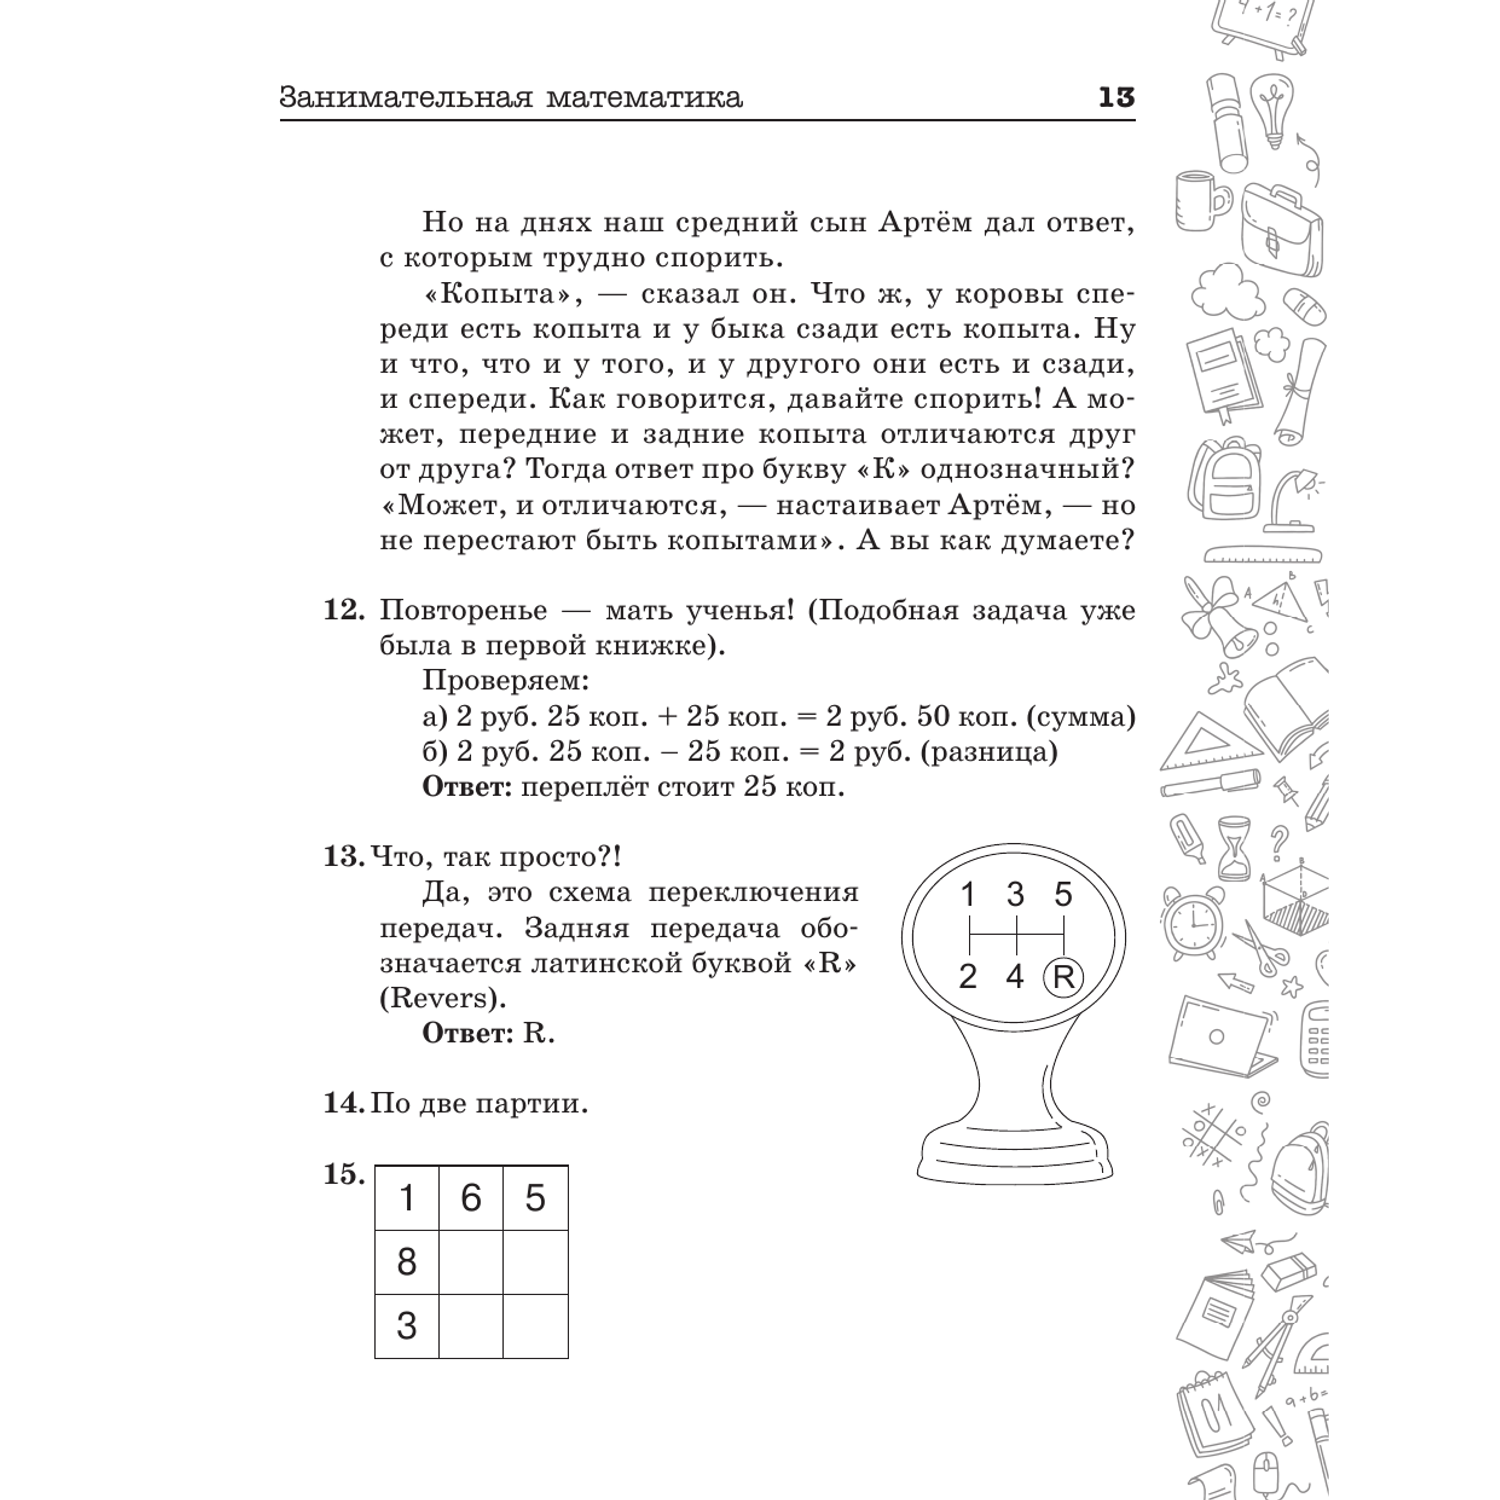 Книги АСТ Занимательная математика для детей и взрослых - фото 14